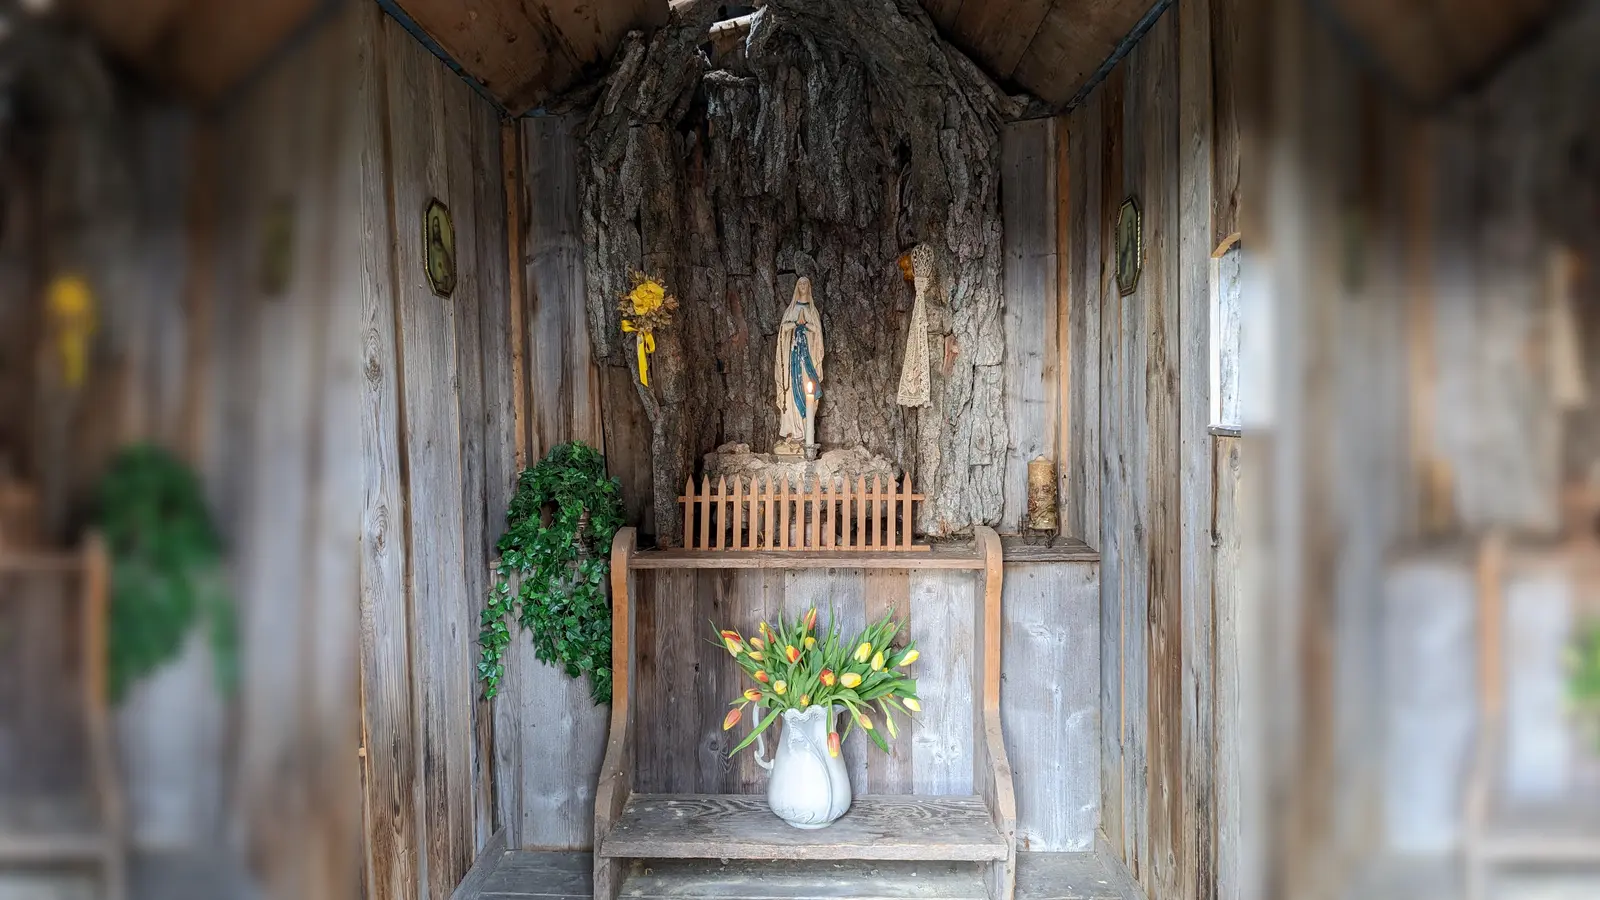 Mit Lourdesgrotte im Inneren: Die Kapelle Mooslern kann auf dem Gelände des Bauernhausmuseums des Landkreises Erding besichtigt werden. (Foto: Nicole Tietze)